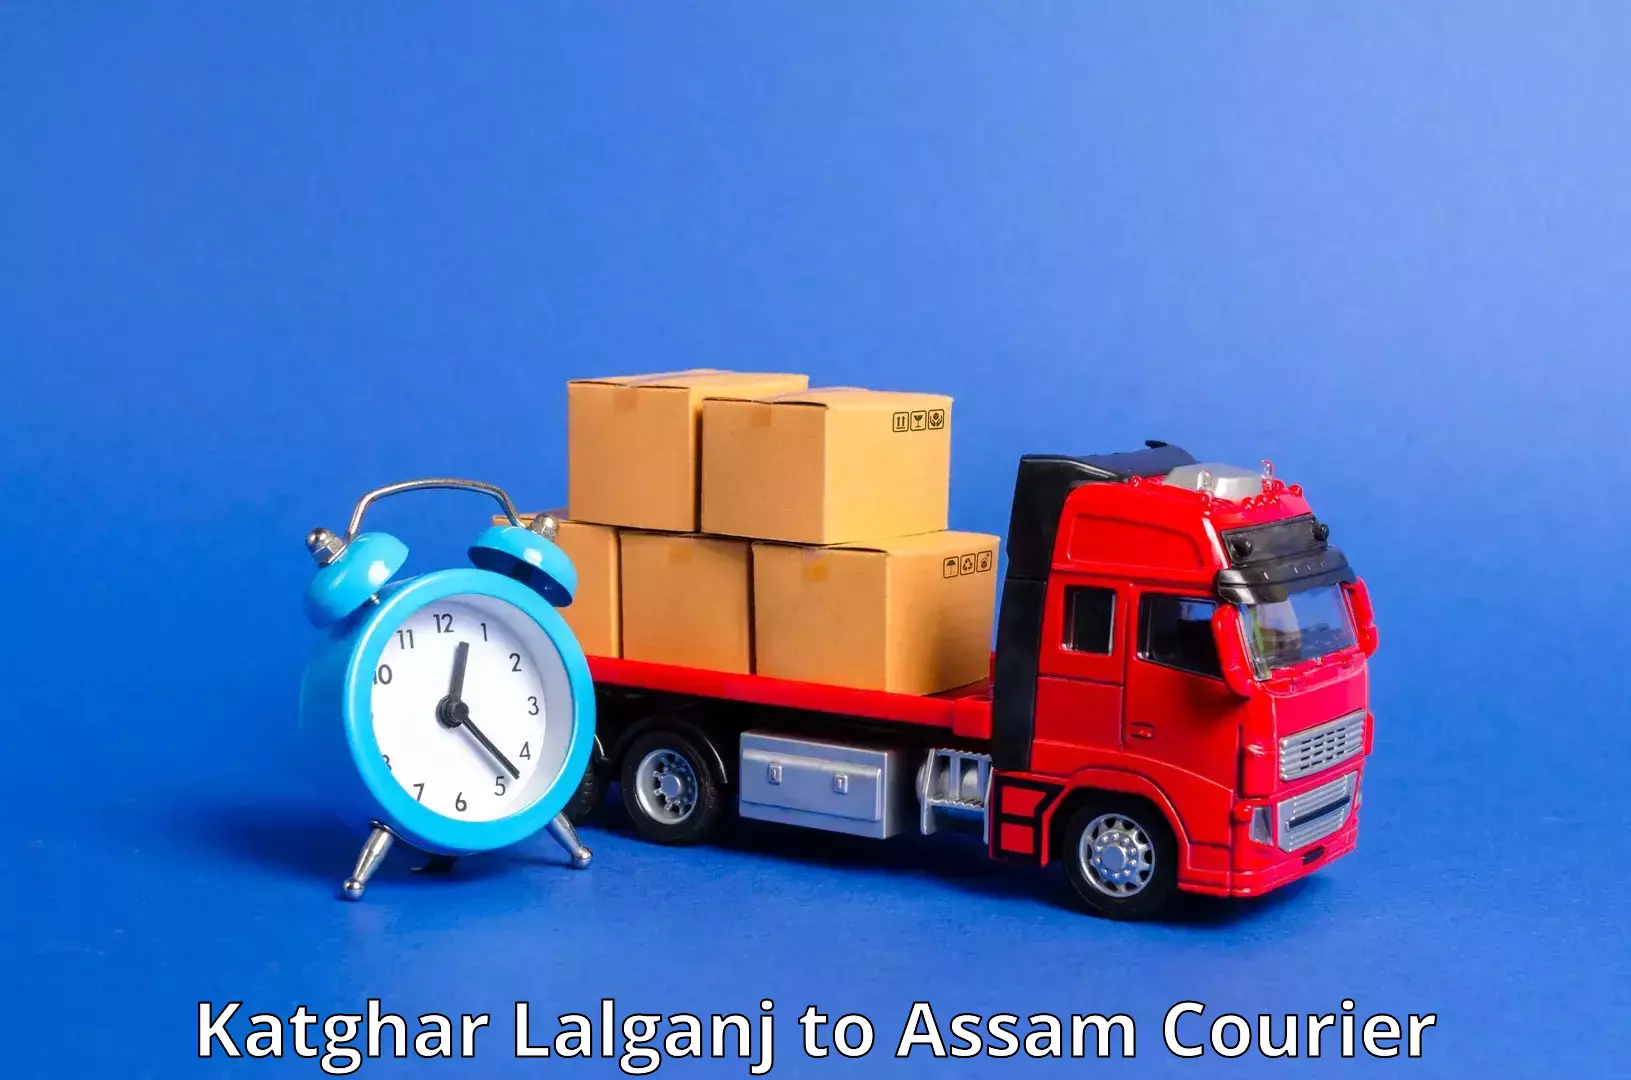 24/7 shipping services Katghar Lalganj to Panchgram